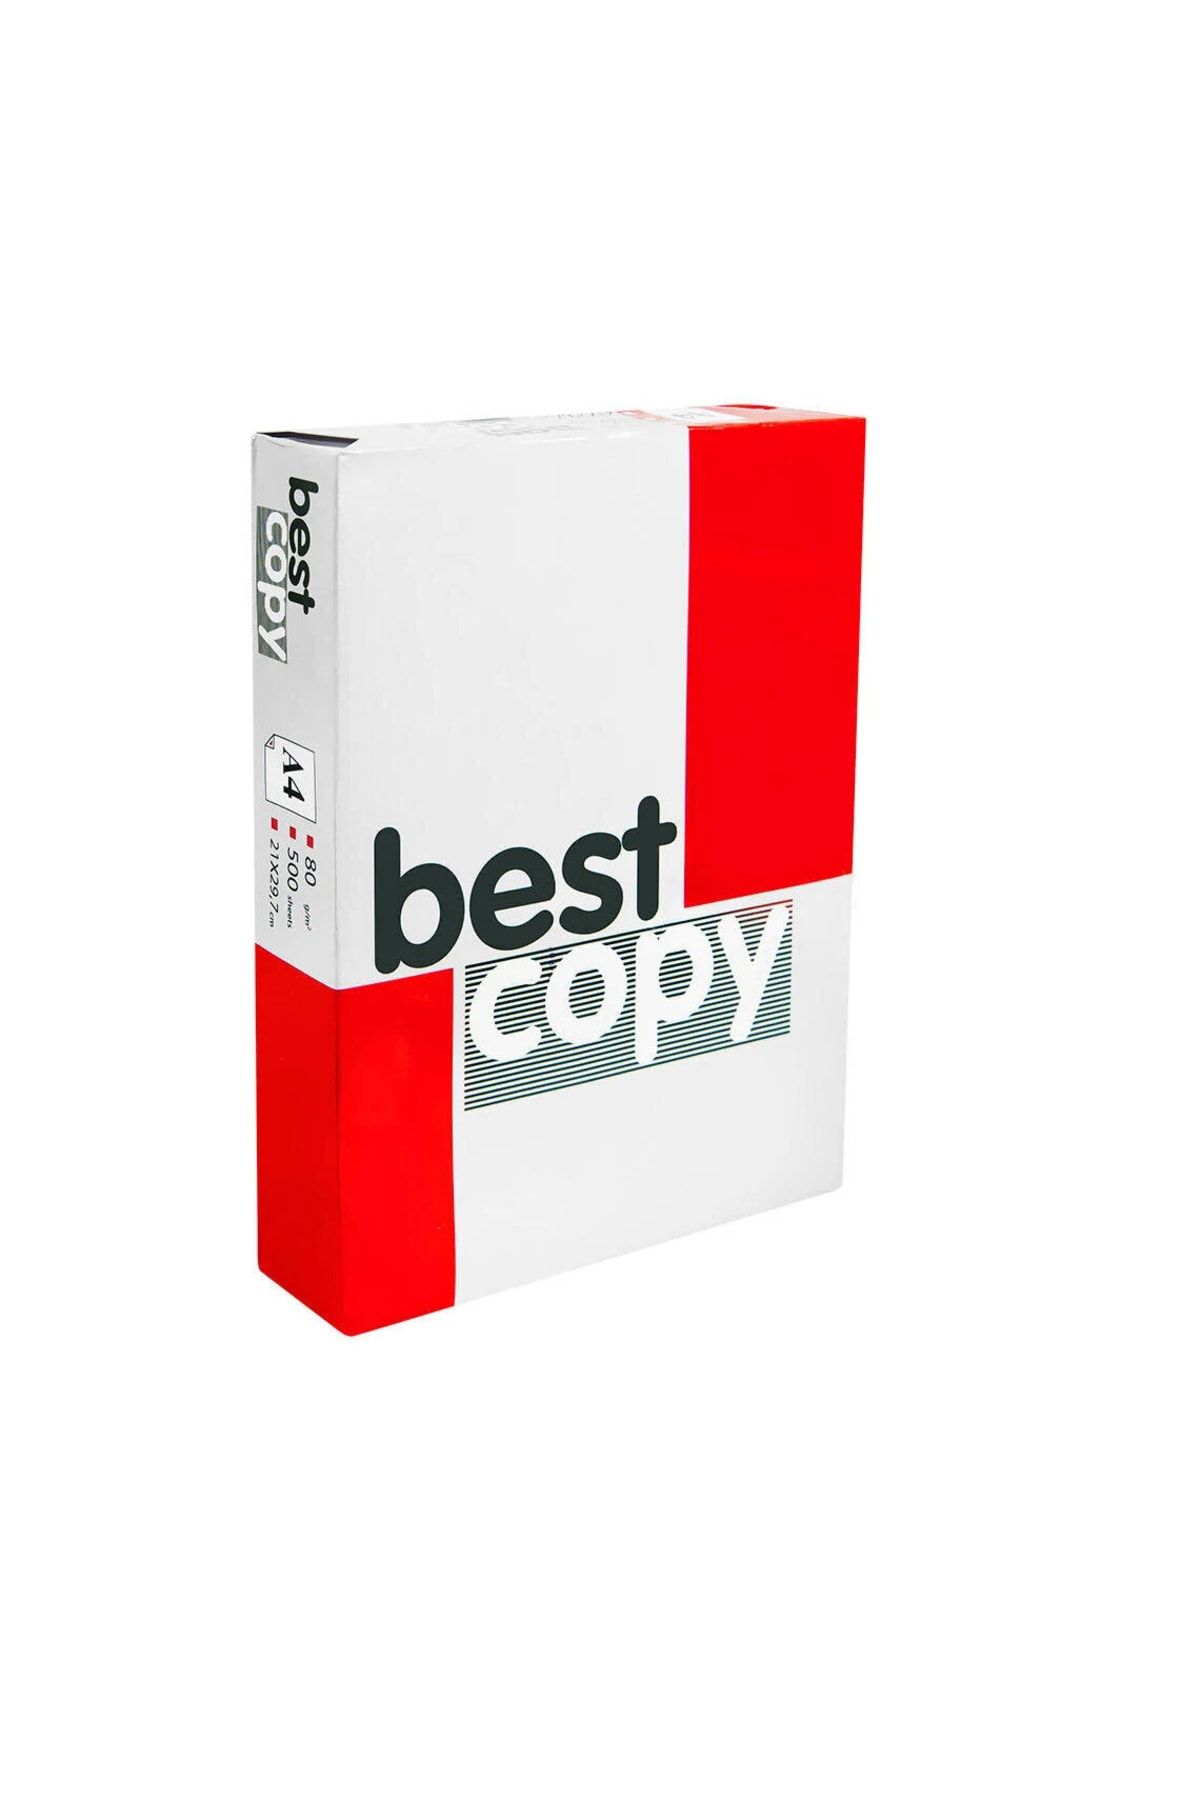 Alkim Kağıt Best Copy A4 Fotokopi Kağıdı 80 Gr/m² 1 Paket 500 Adet